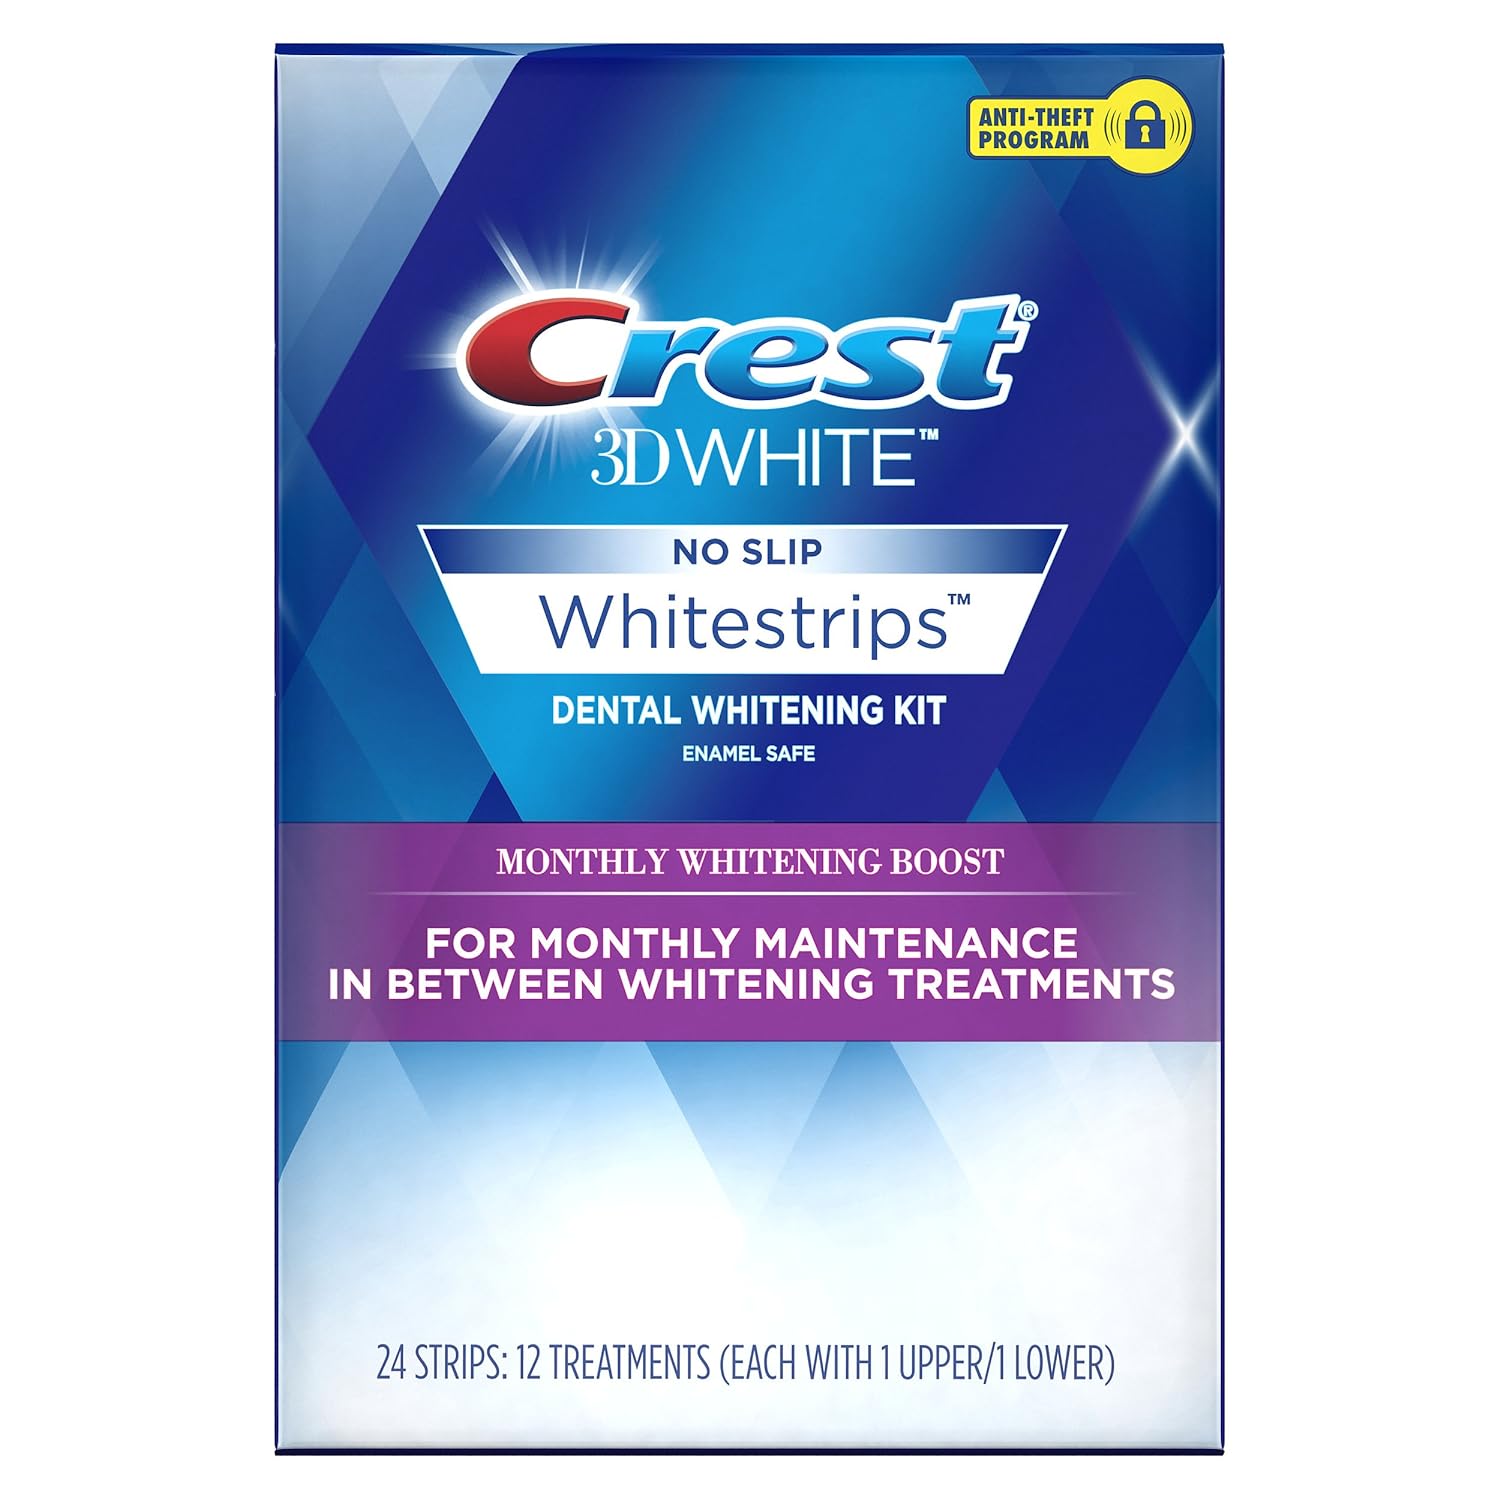 Crest 3D White Monthly Whitening Boost Dental Kit, Teeth Whitening Strips Kit, 12 Treatments